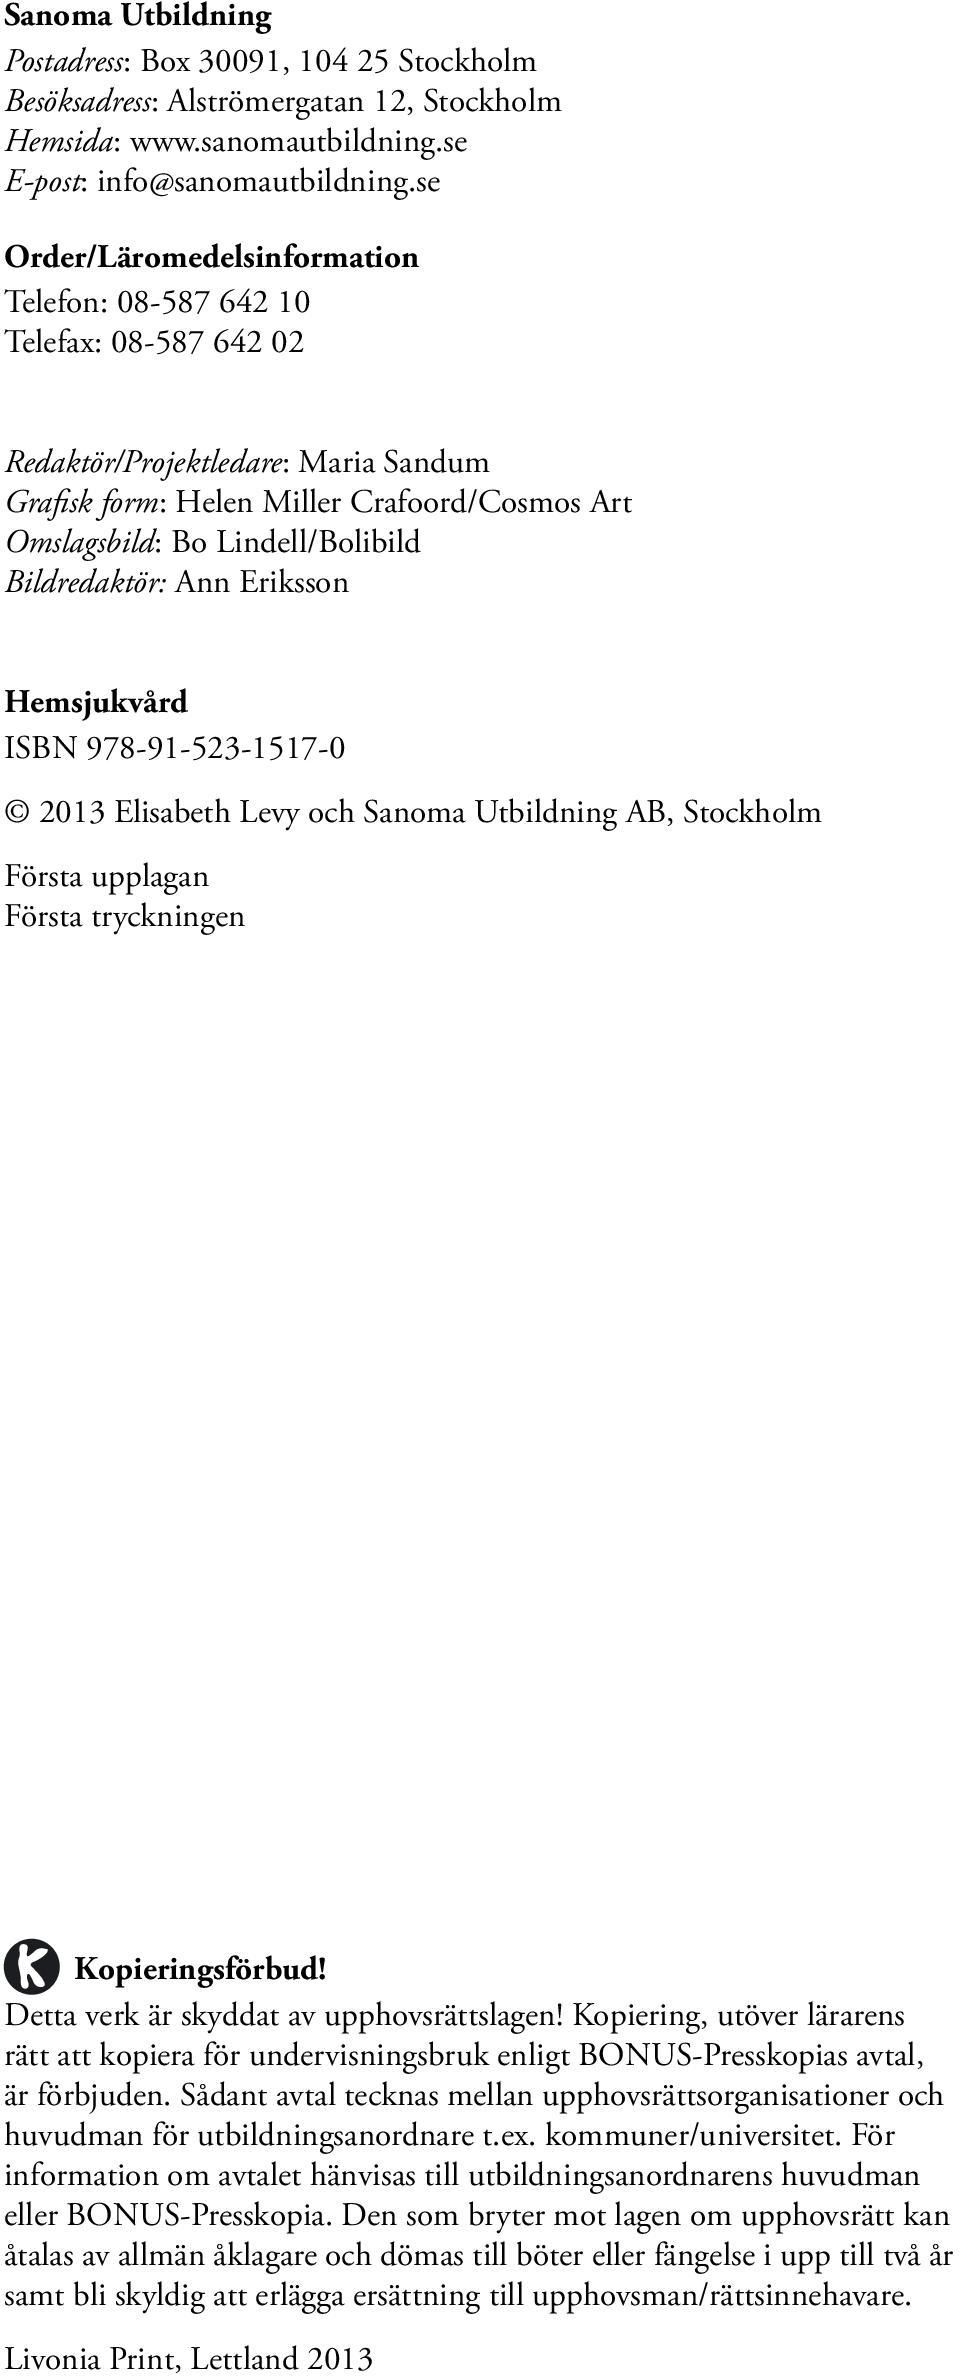 Bildredaktör: Ann Eriksson Hemsjukvård ISBN 978-91-523-1517-0 2013 Elisabeth Levy och Sanoma Utbildning AB, Stockholm Första upplagan Första tryckningen Kopieringsförbud!